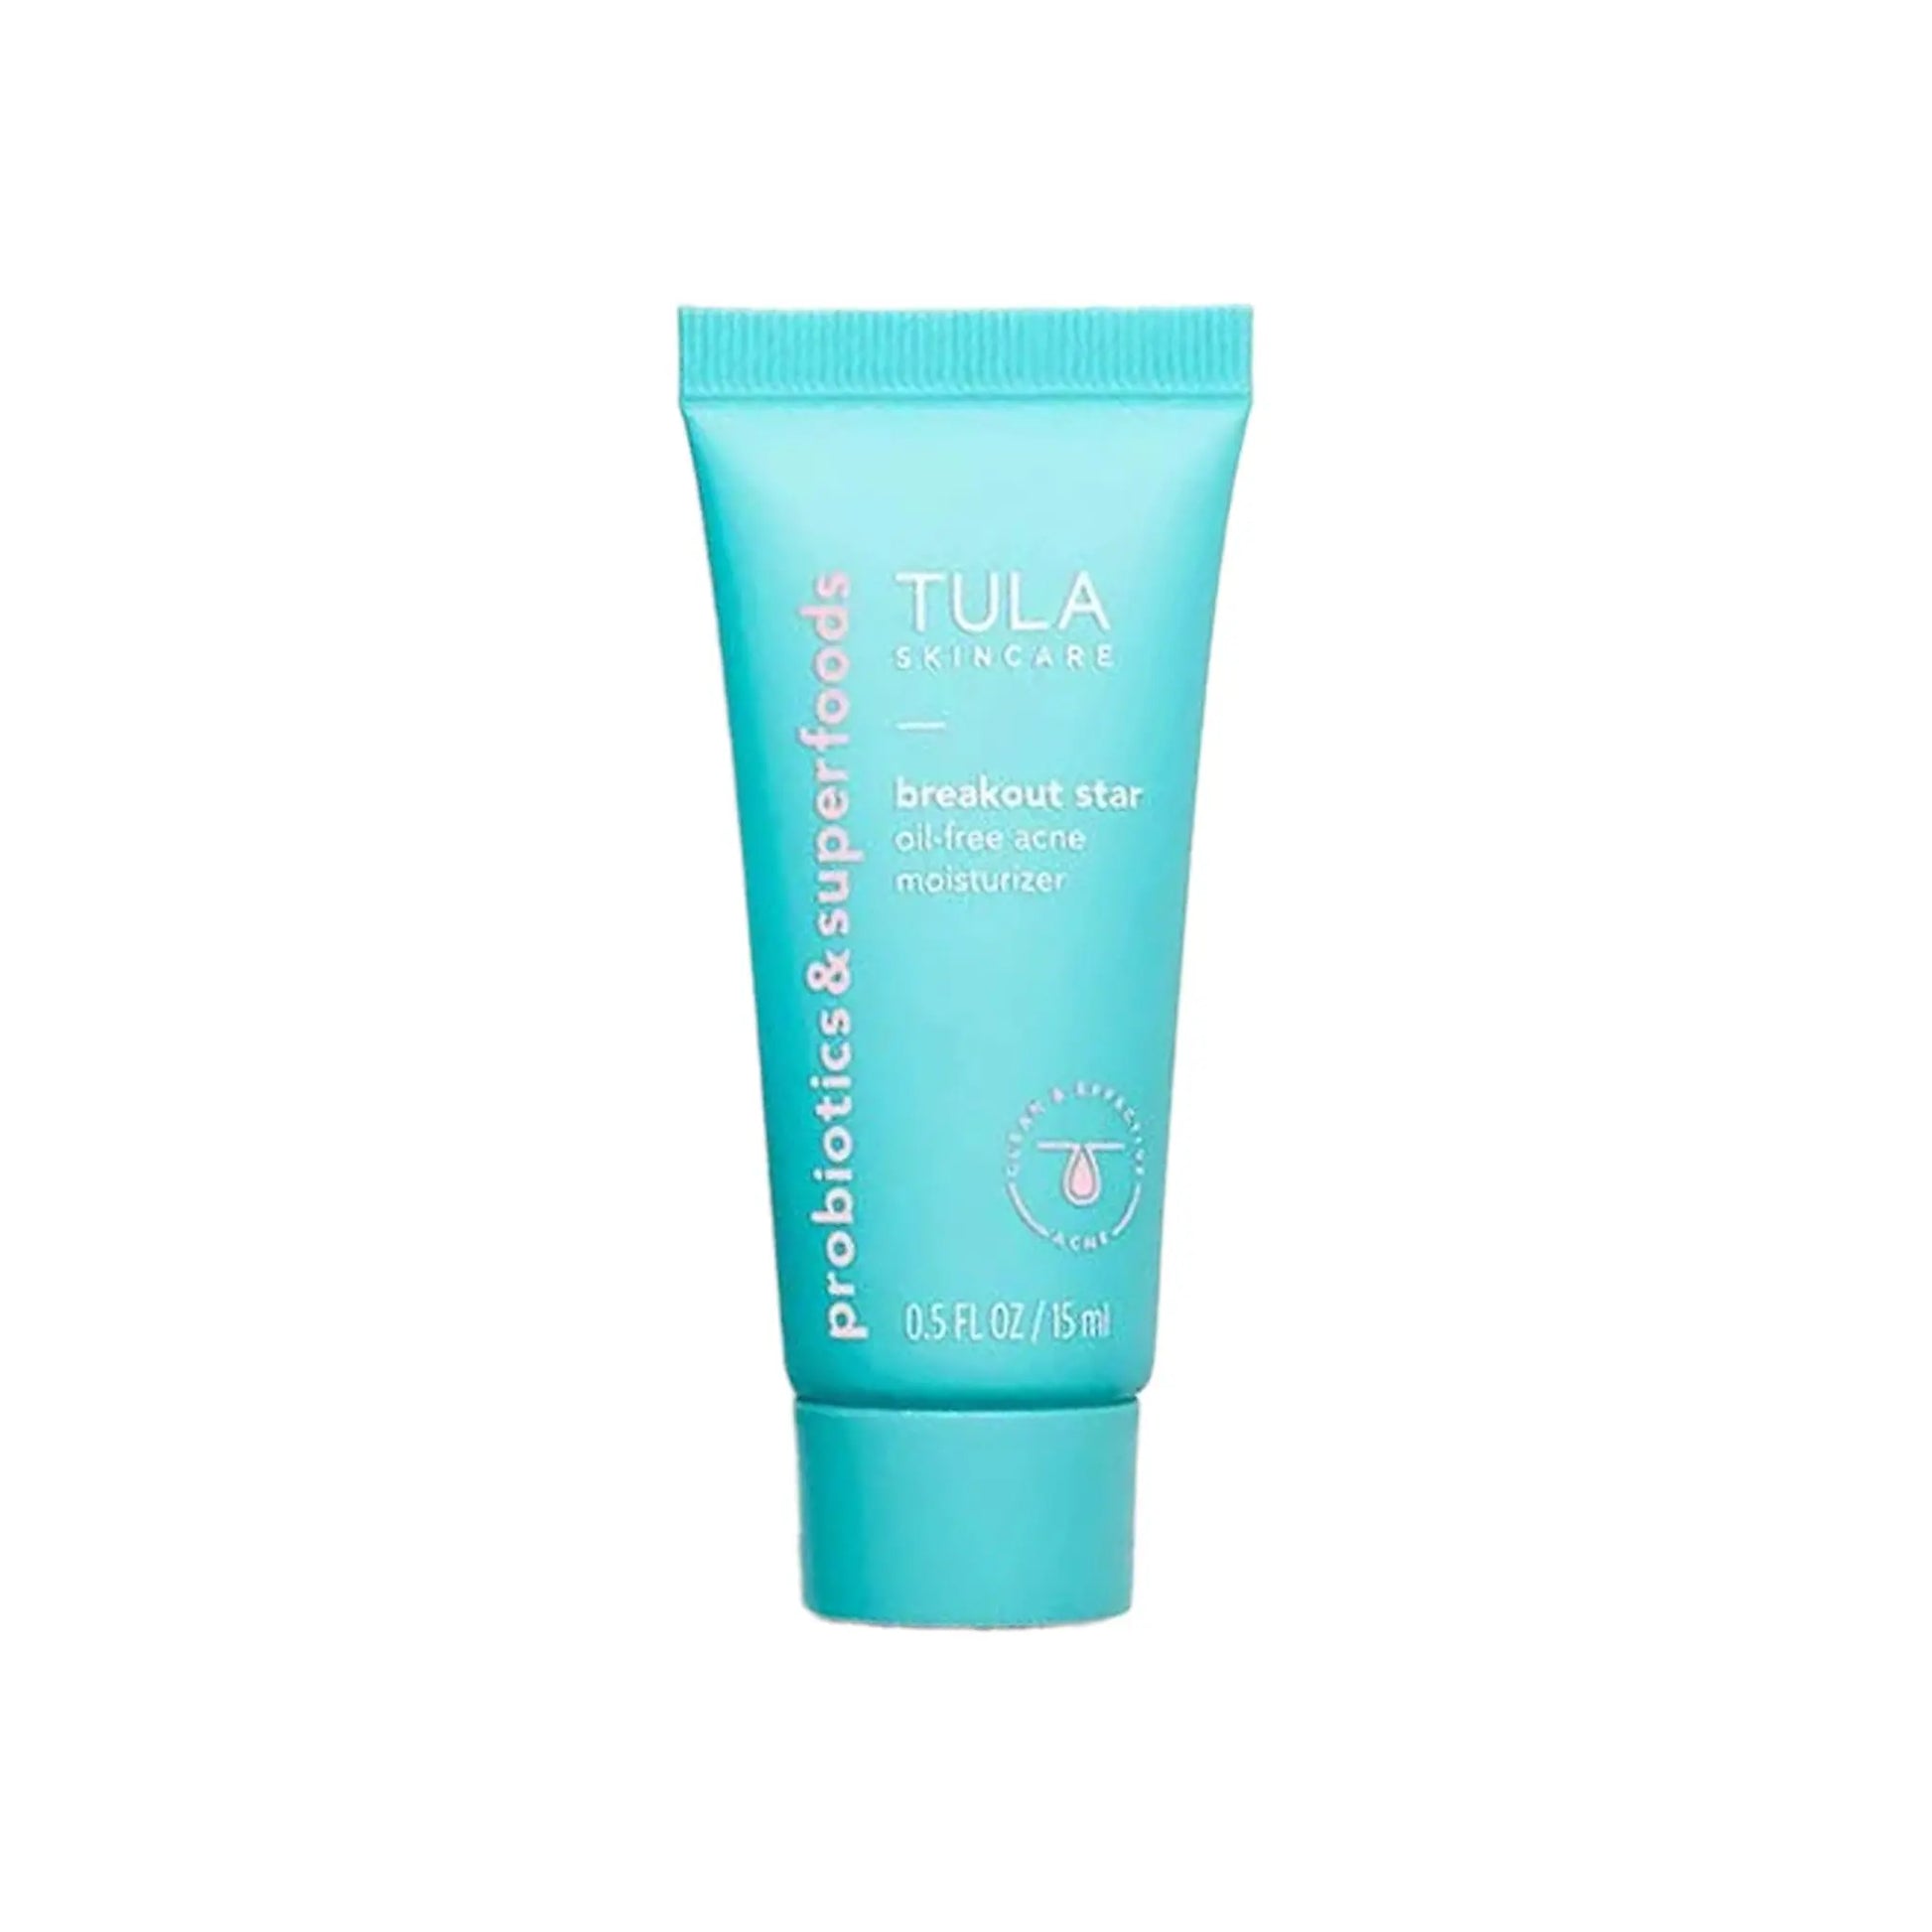 Tula Skin Care Probiotics & Superfoods 15ML Tula